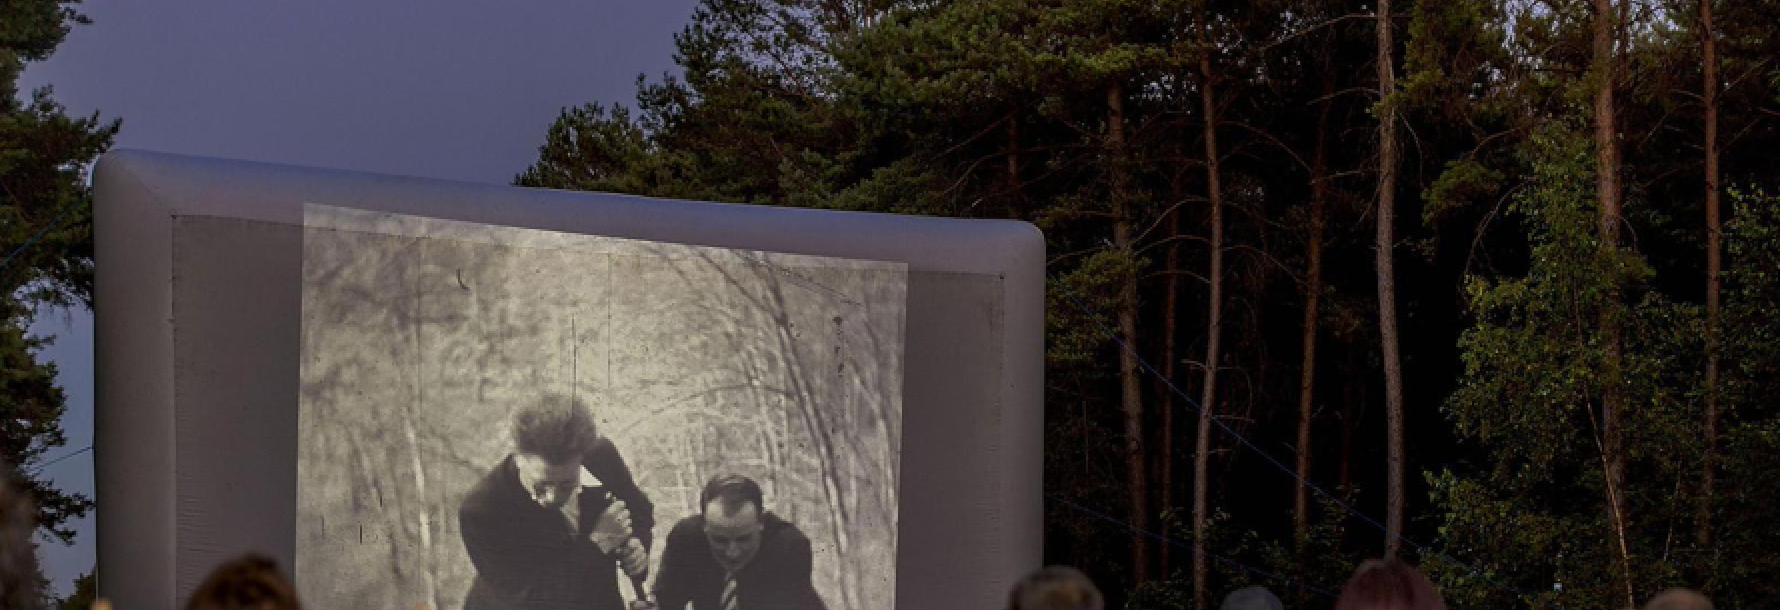 Branche & Ciné « Films en forêt, une expérience de cinéma »  (76 et 27)